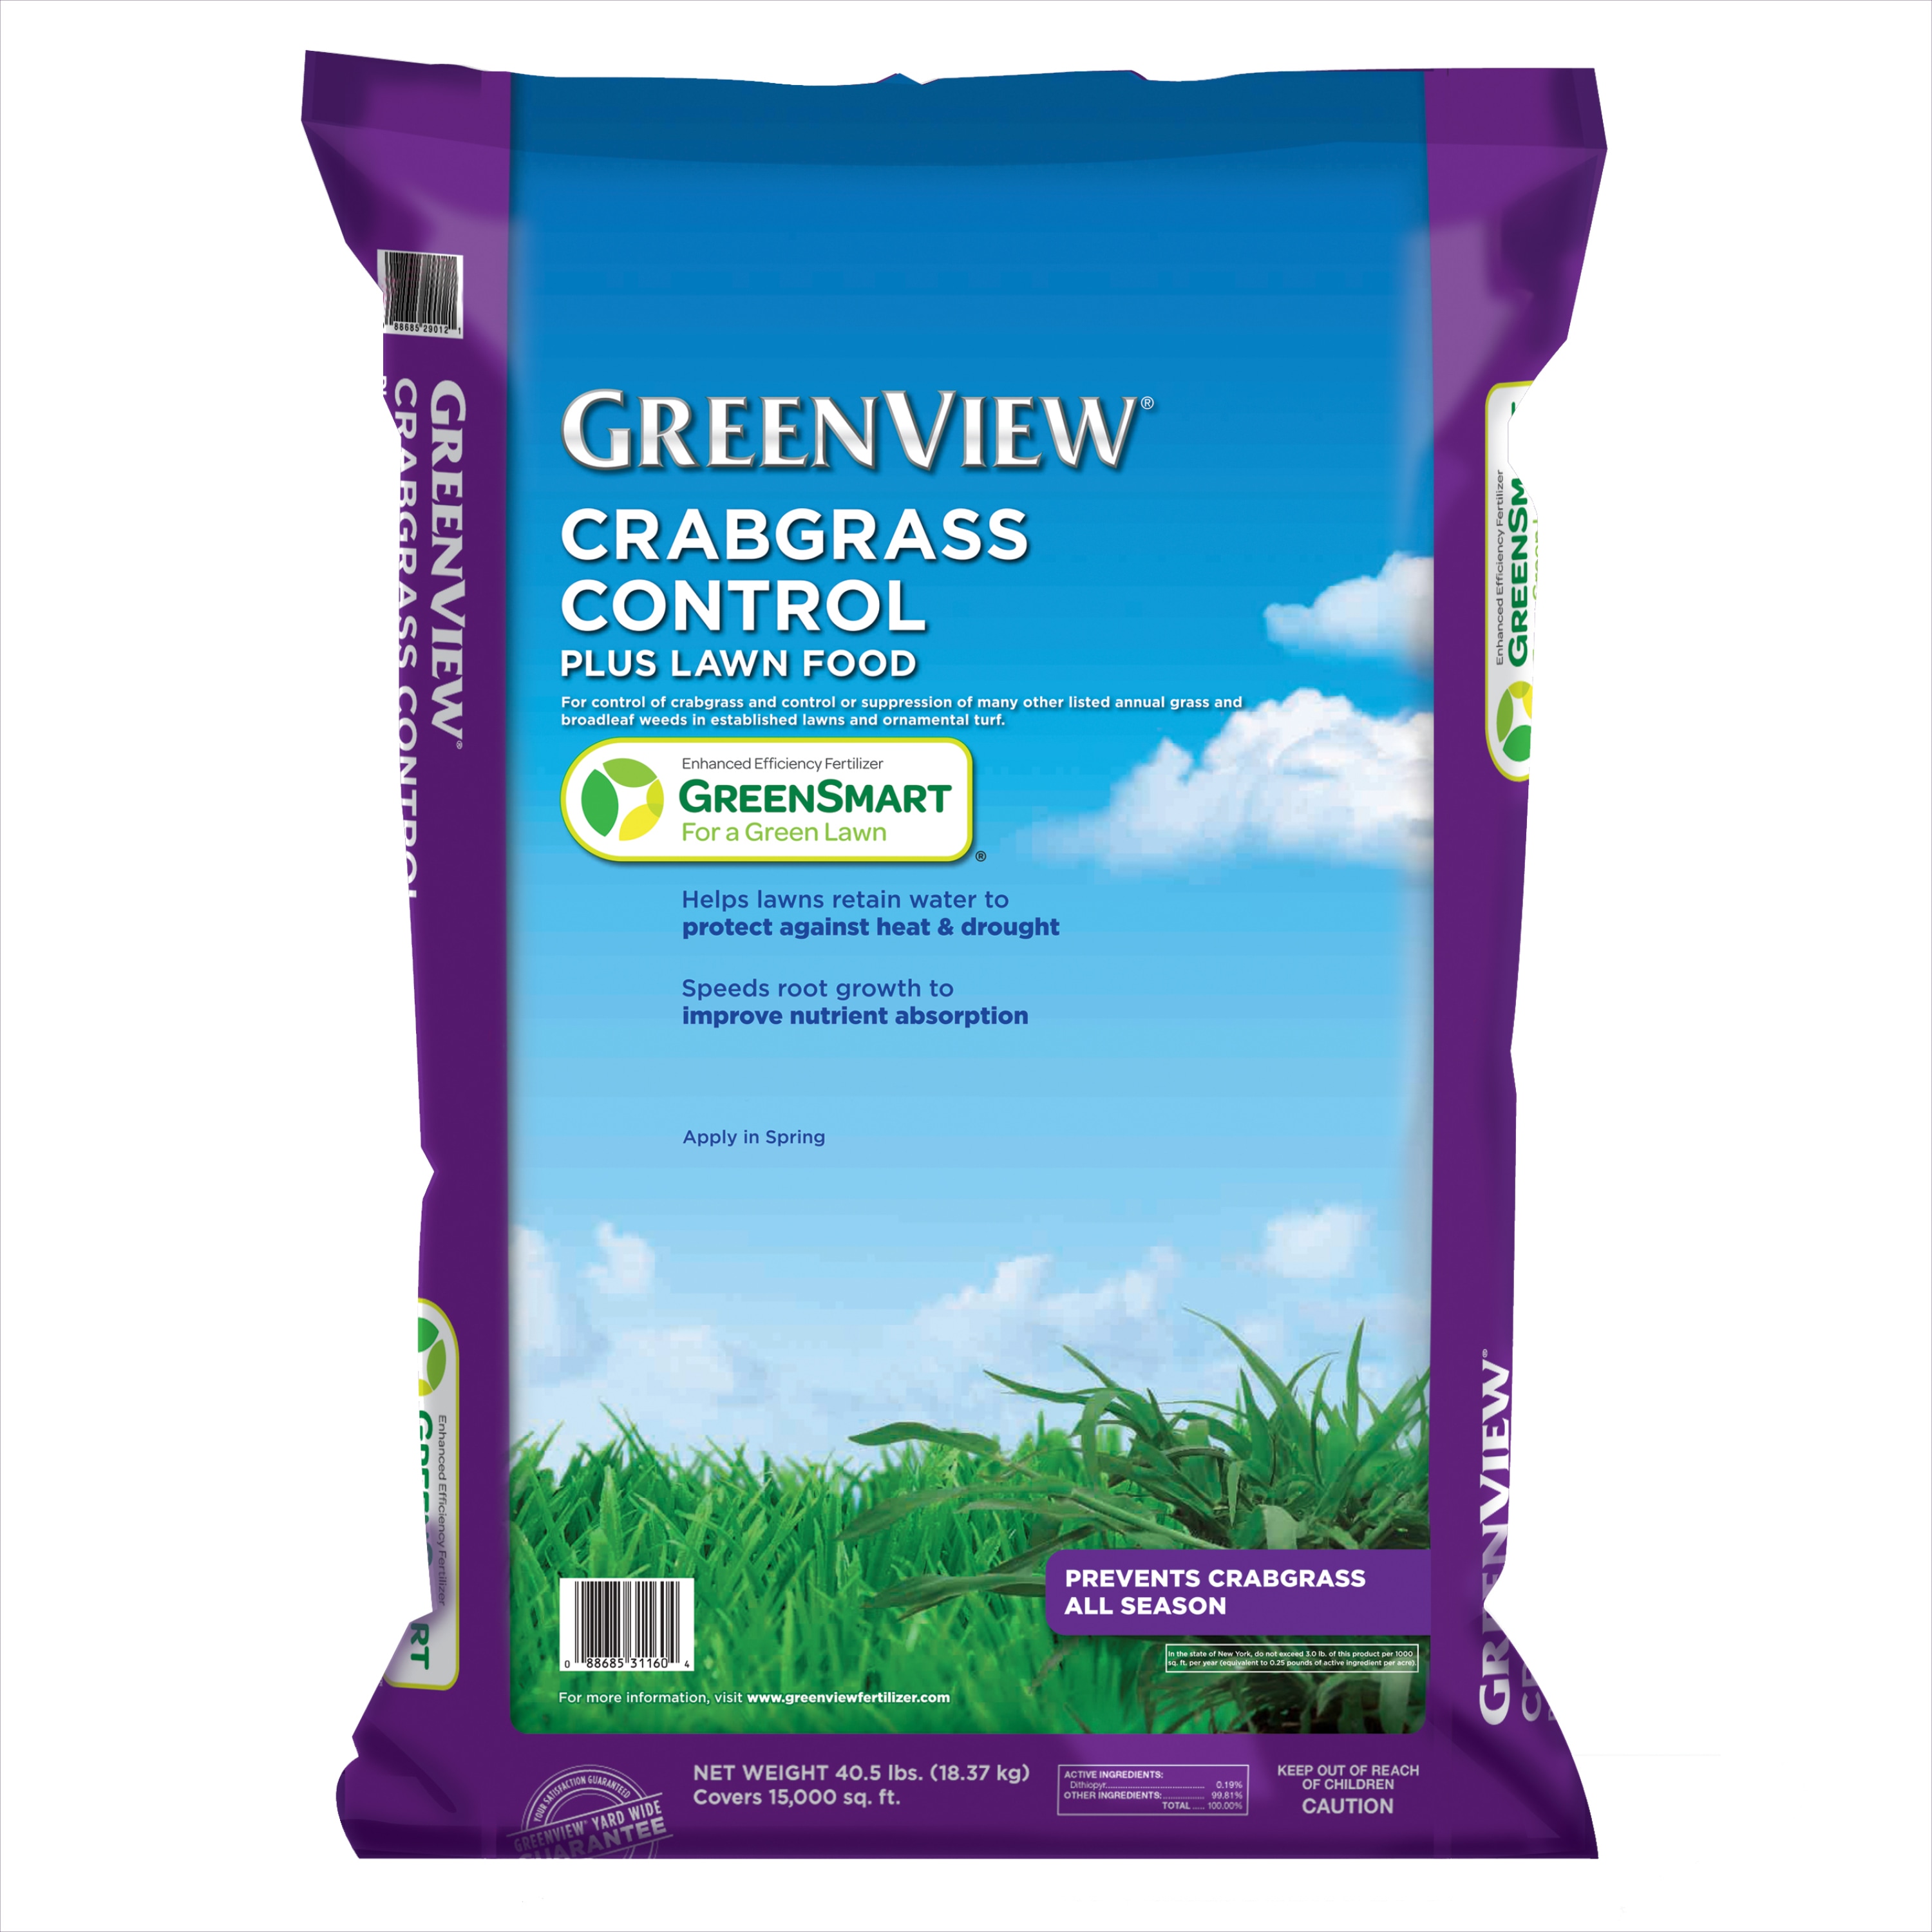 Greenview Crabgrass Control + Lawn Food 40.5-lbs. 15000-sq ft Pre-emergent Crabgrass Control